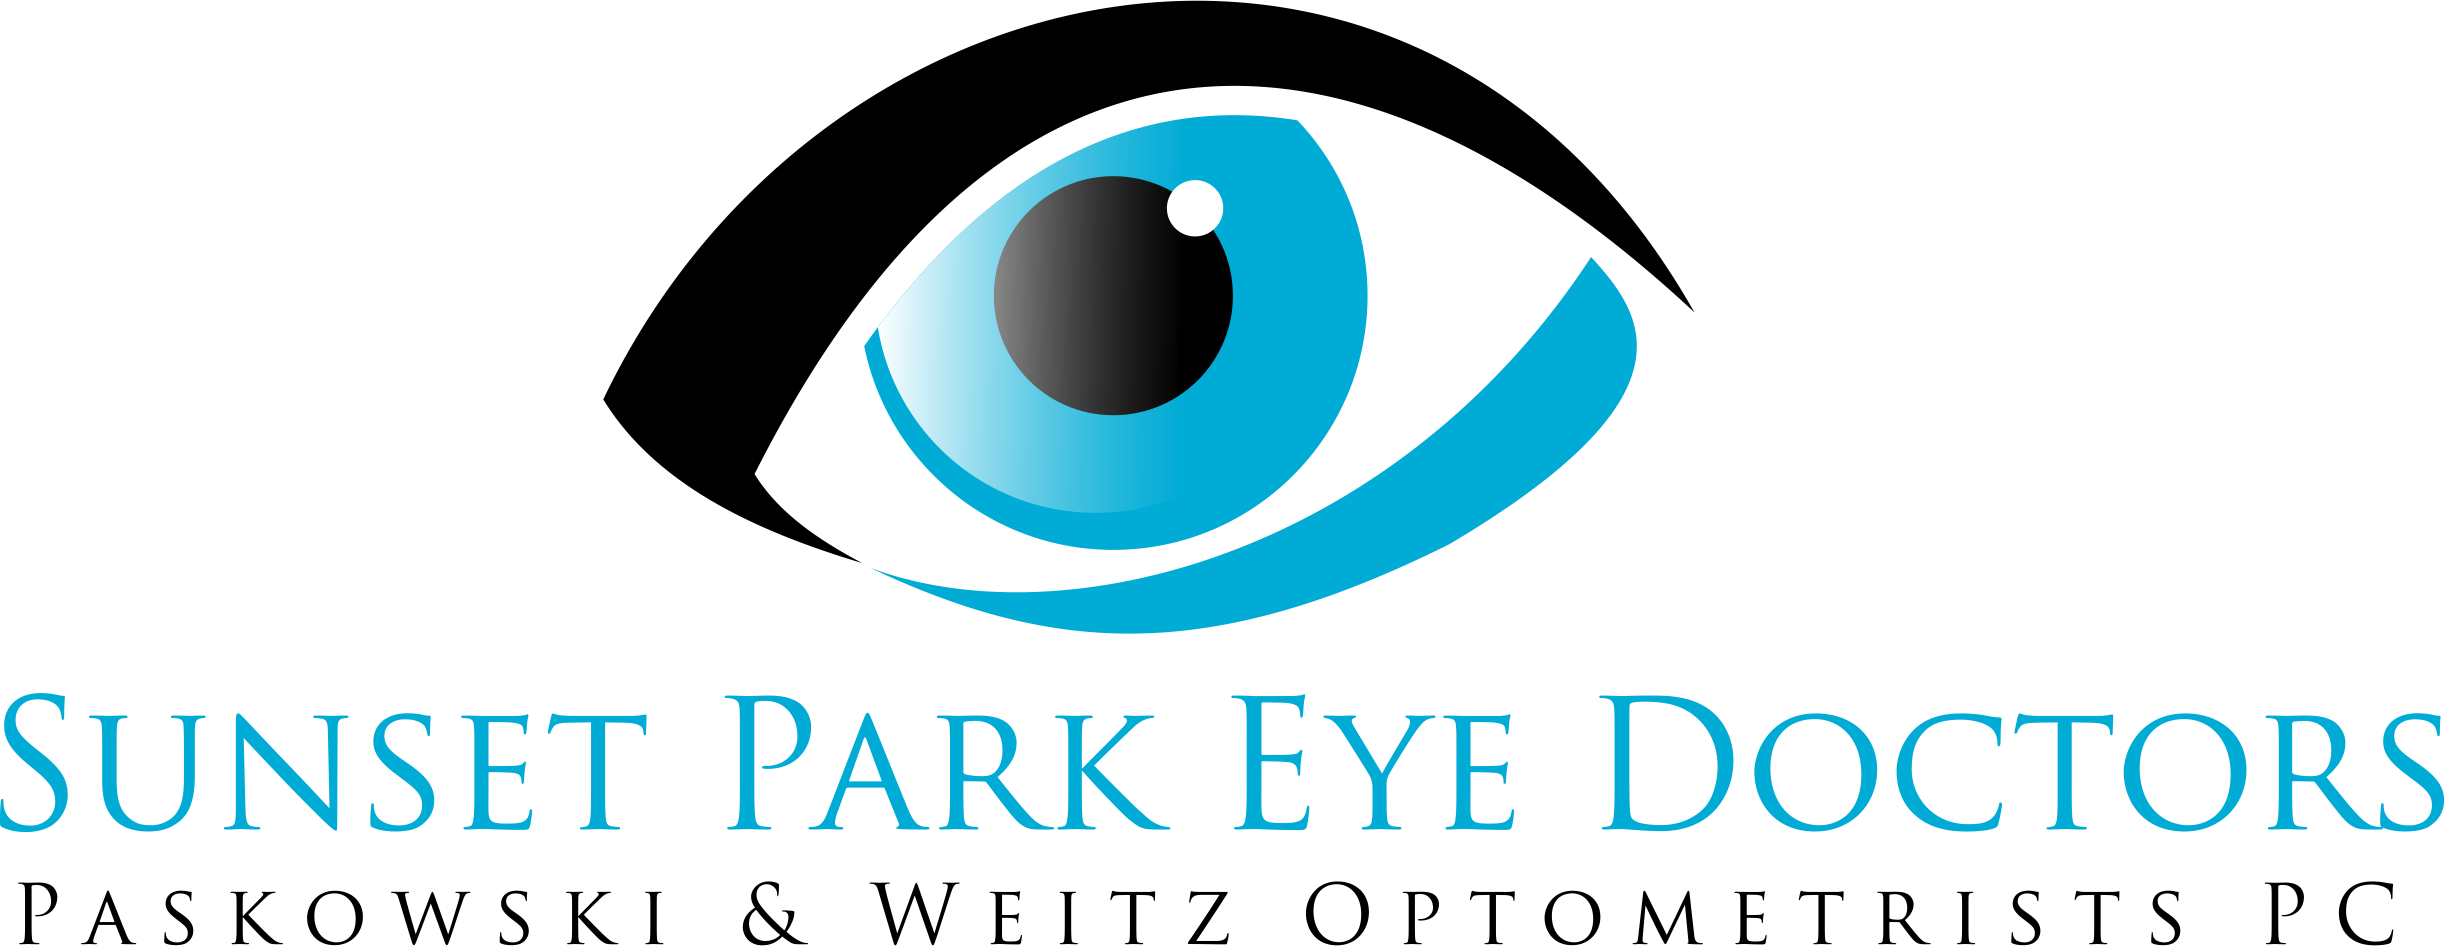 Sunset Park Eye Doctors